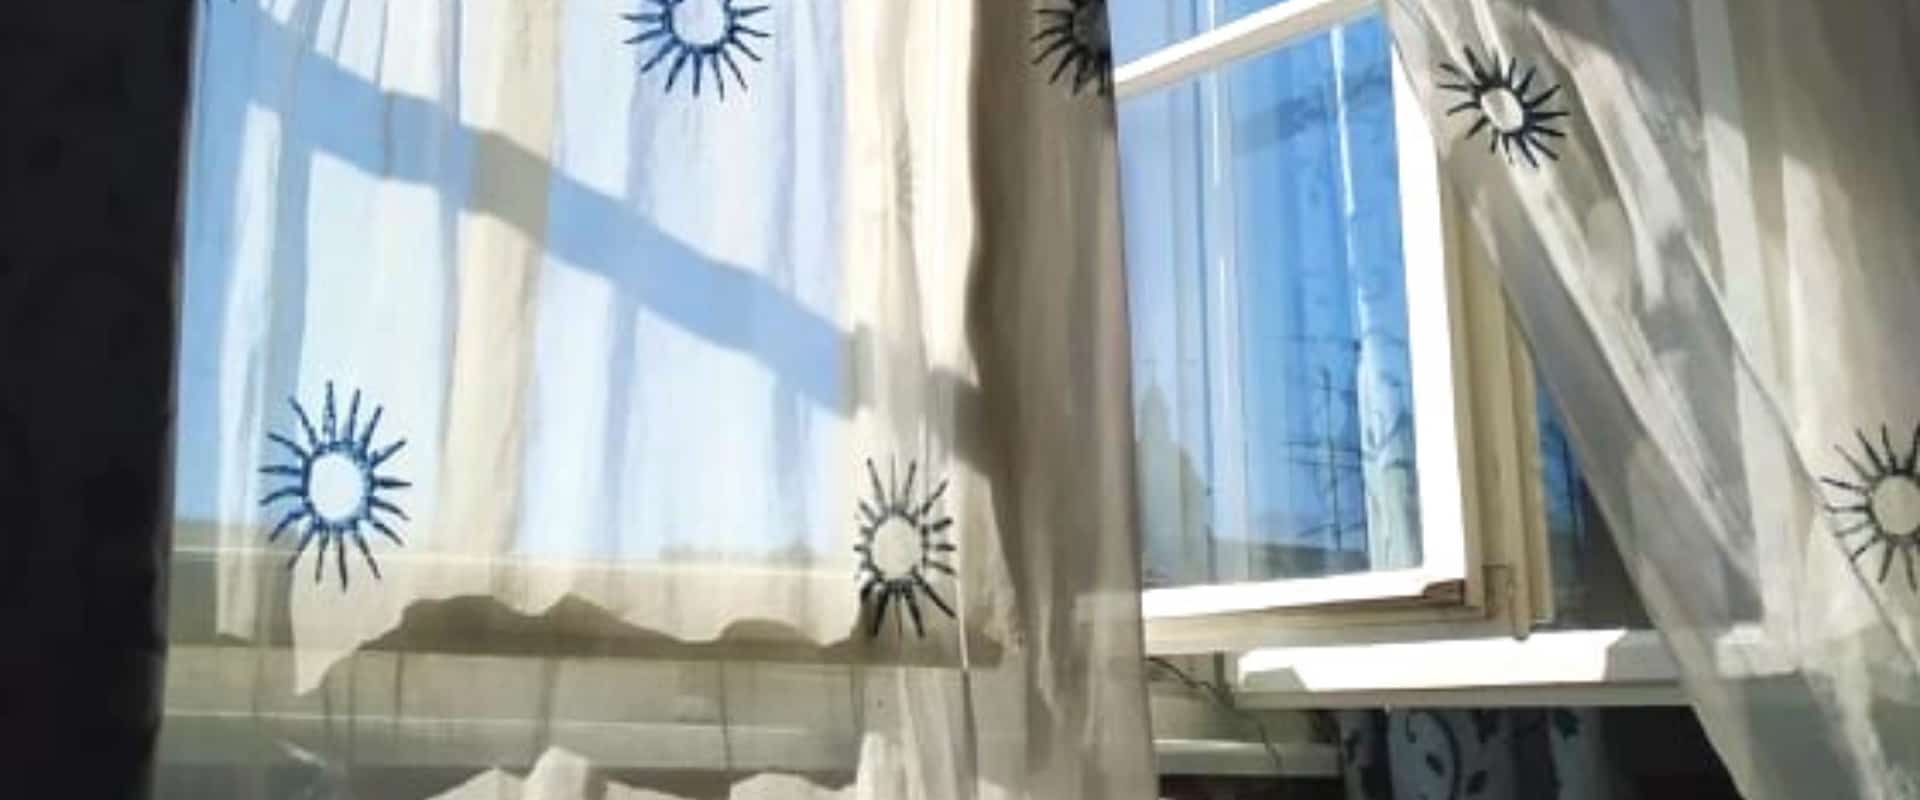 Rideau blanc diaphane avec soleils brodés en bleu ballotant au vent devant une fenêtre ouverte.